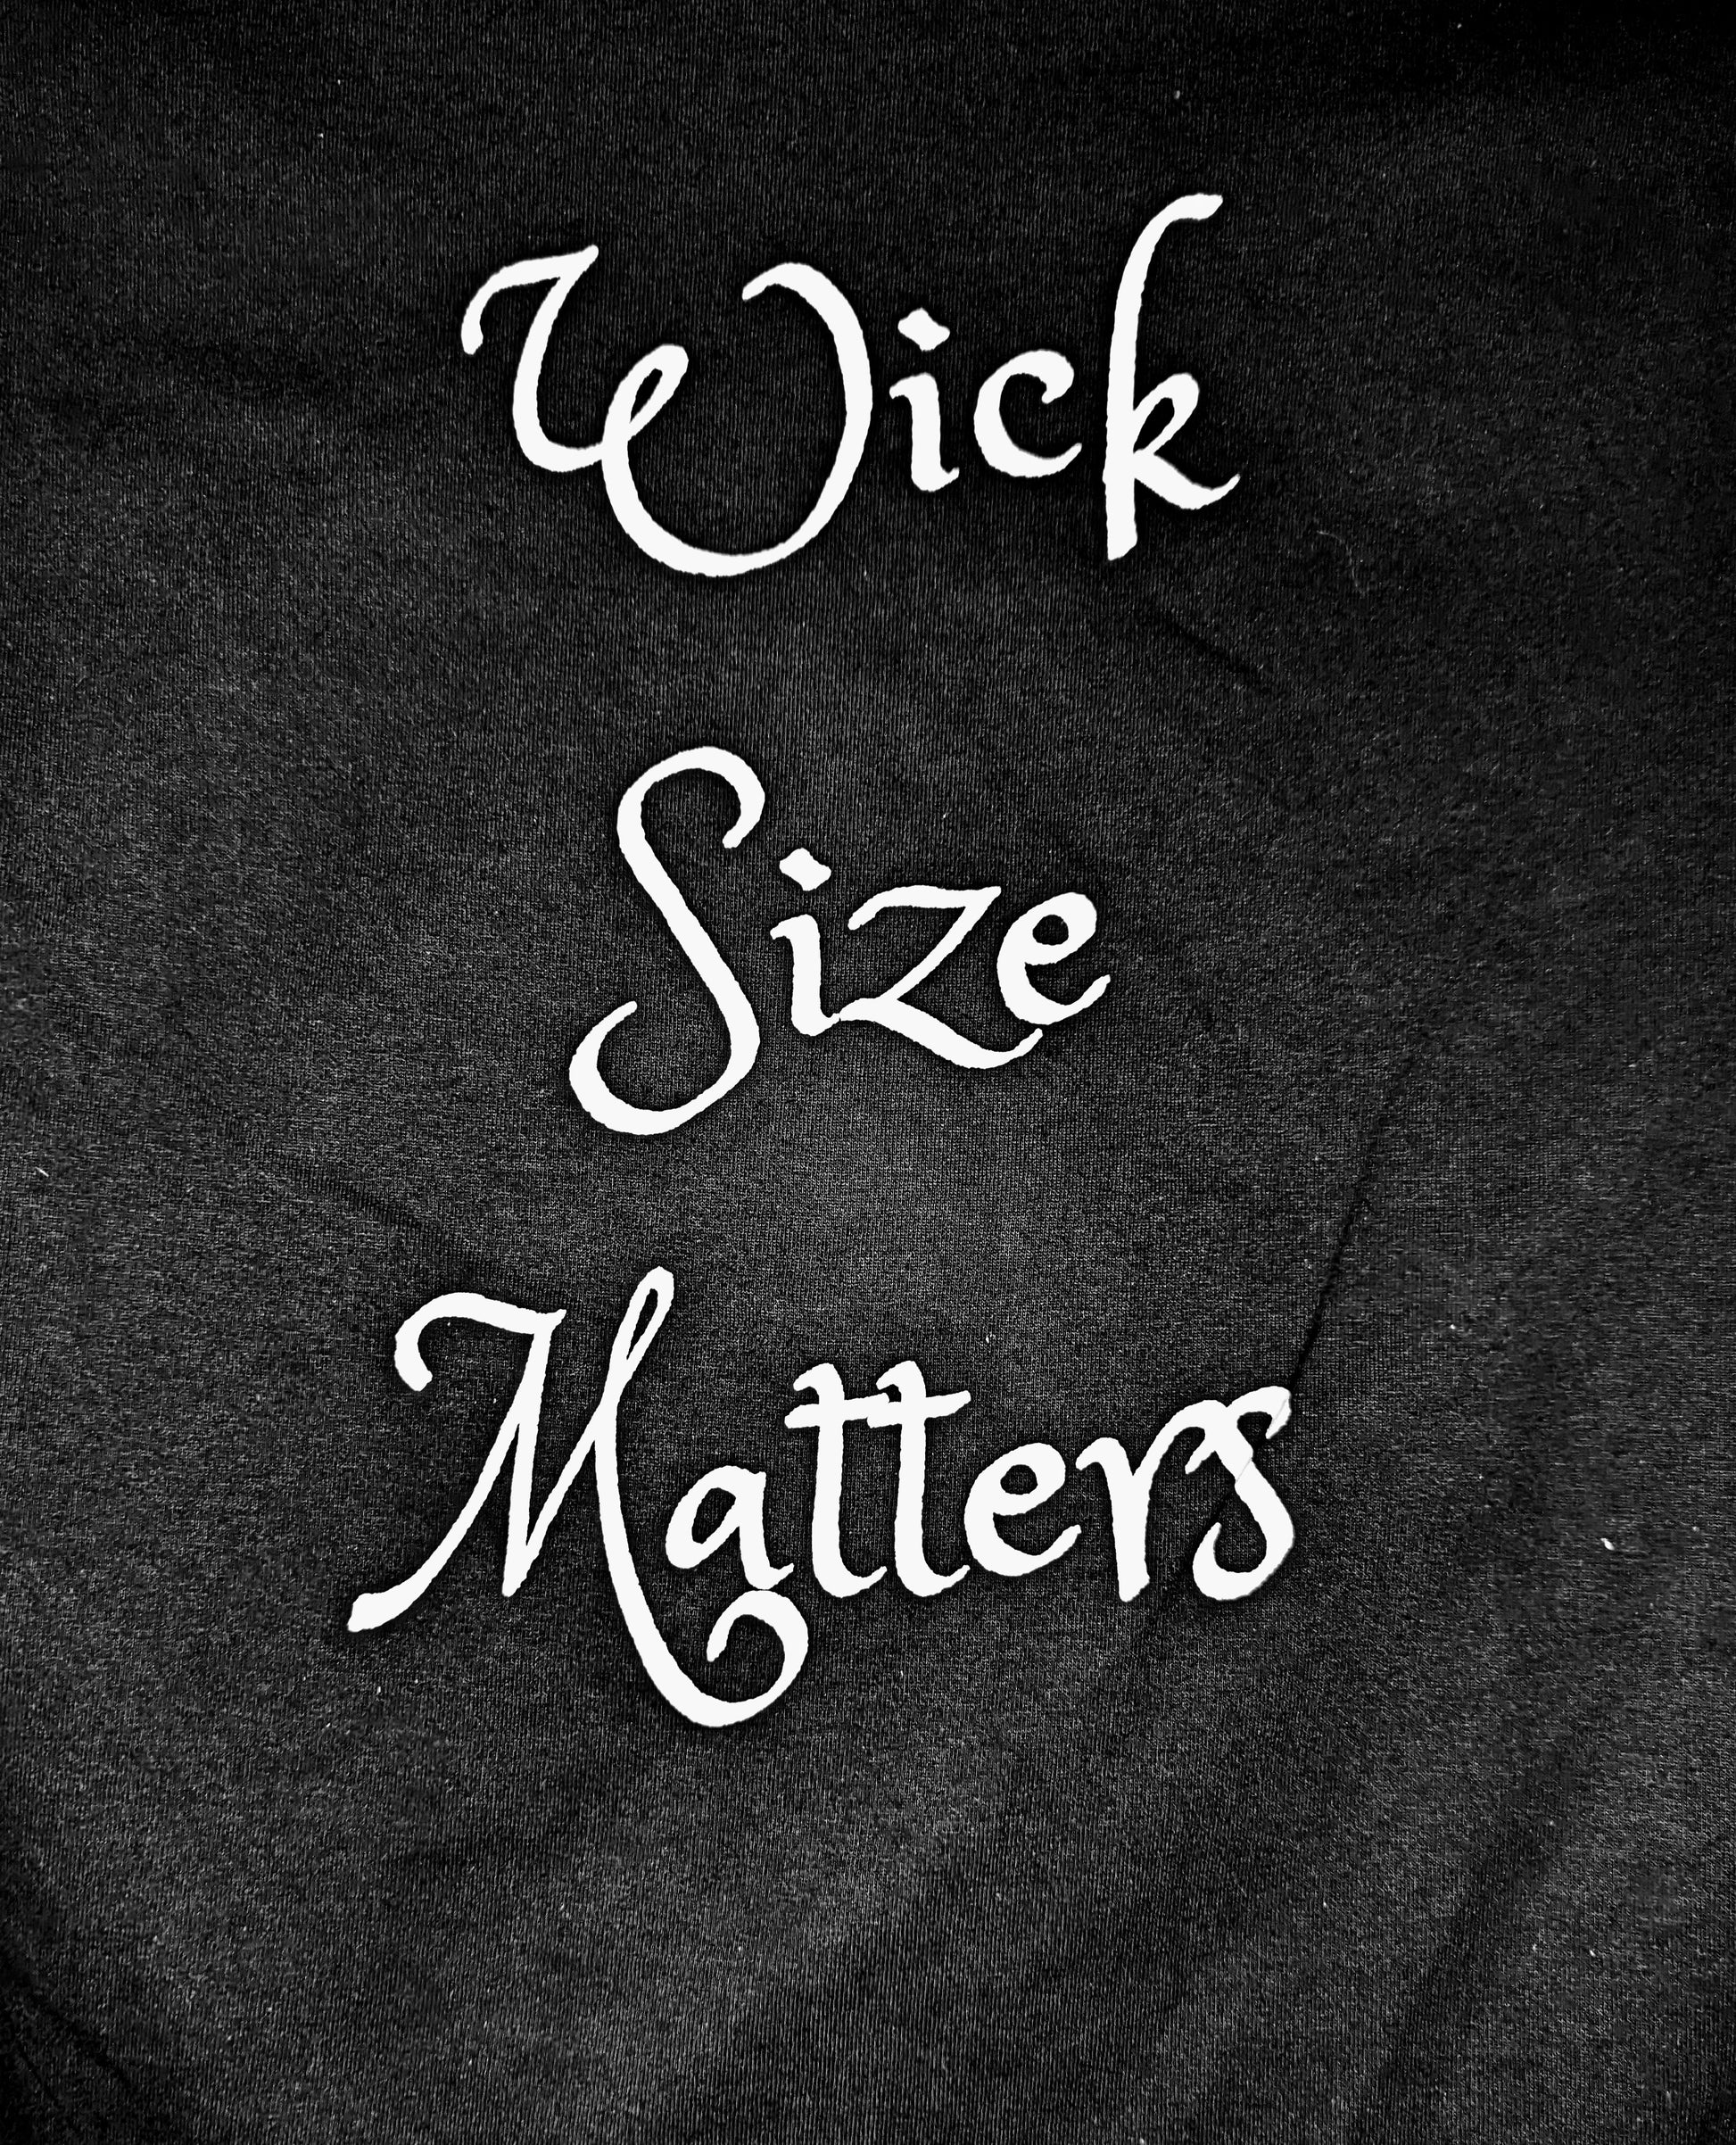 Wick Size Matters T-Shirt - Hemp Wick Candles